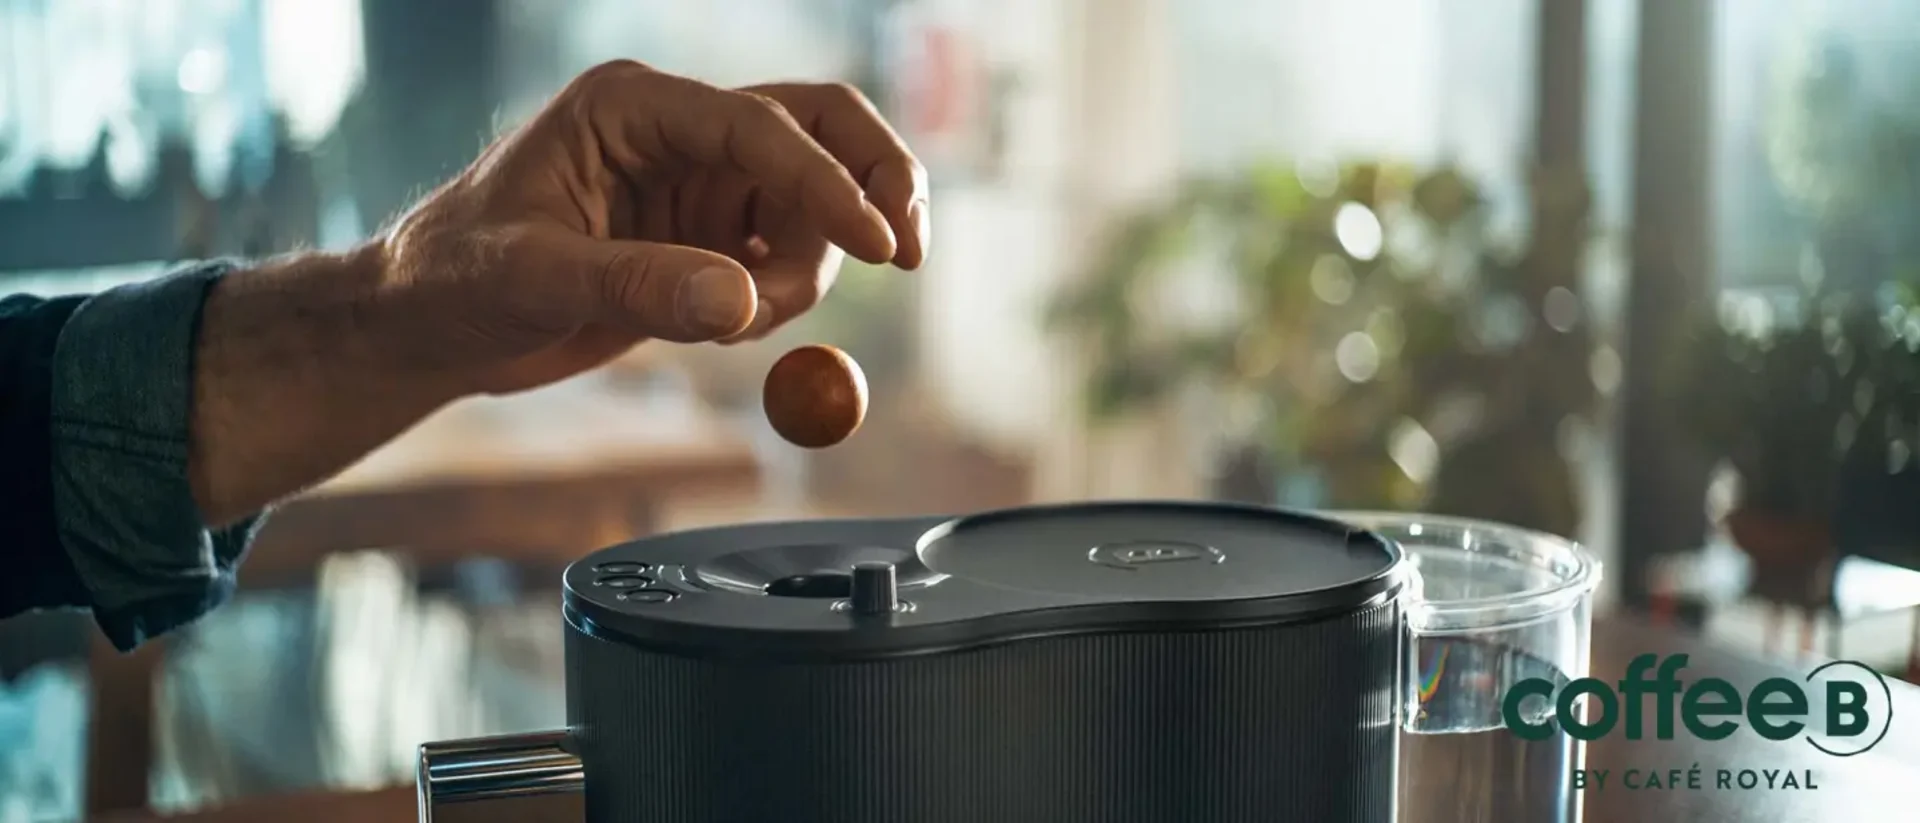 Une main lance une boule de café dans une machine.